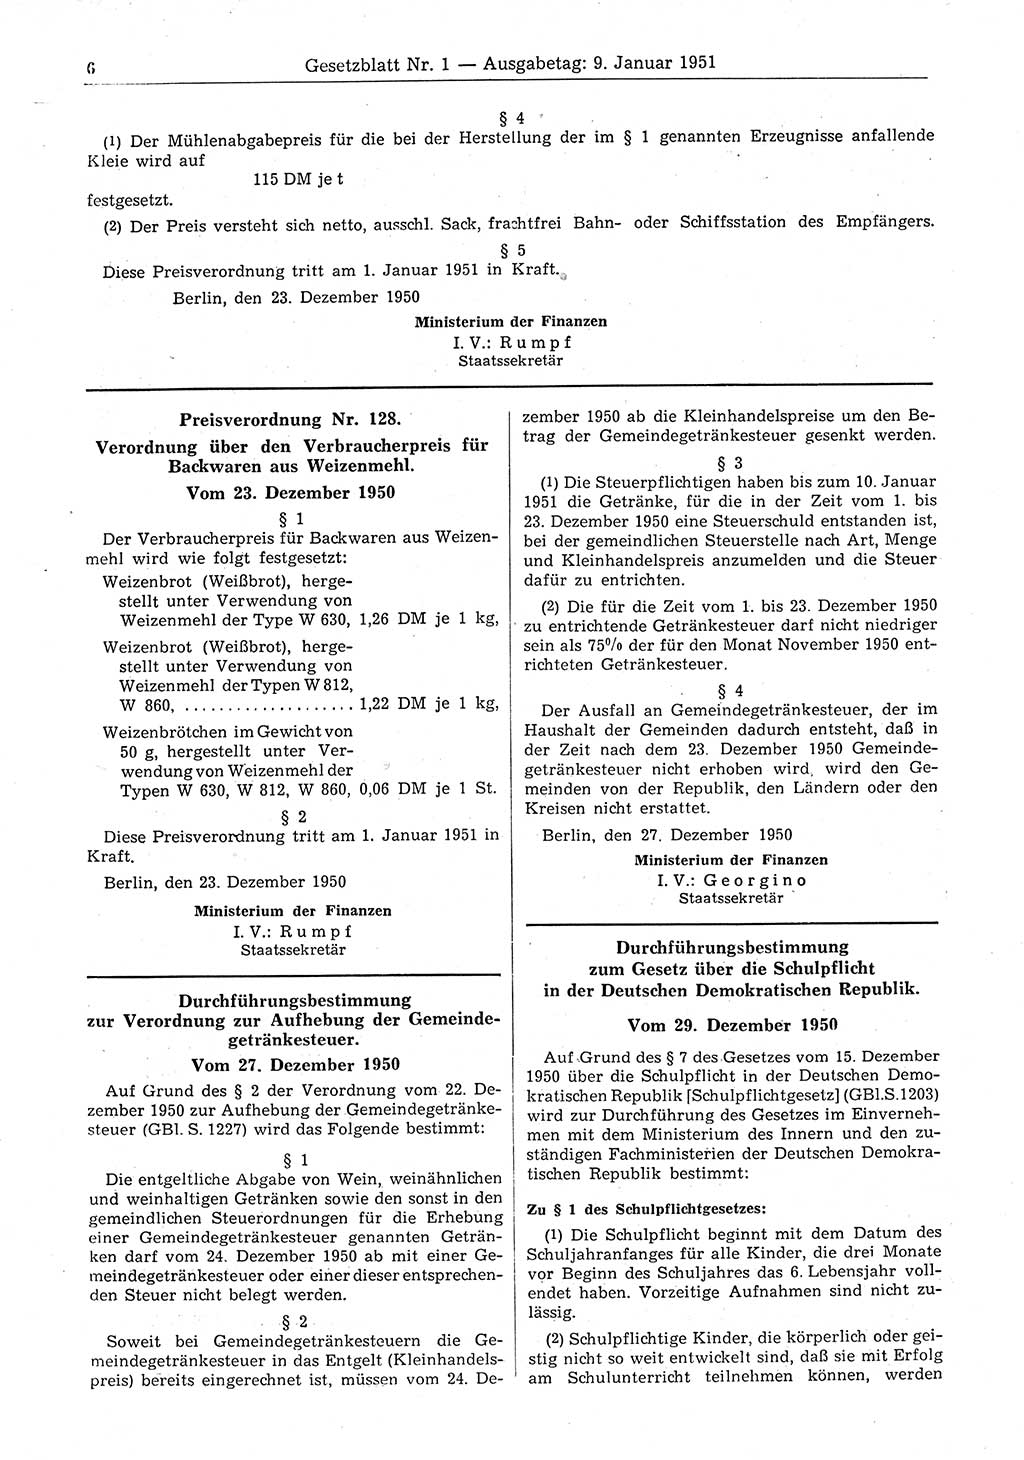 Gesetzblatt (GBl.) der Deutschen Demokratischen Republik (DDR) 1951, Seite 6 (GBl. DDR 1951, S. 6)